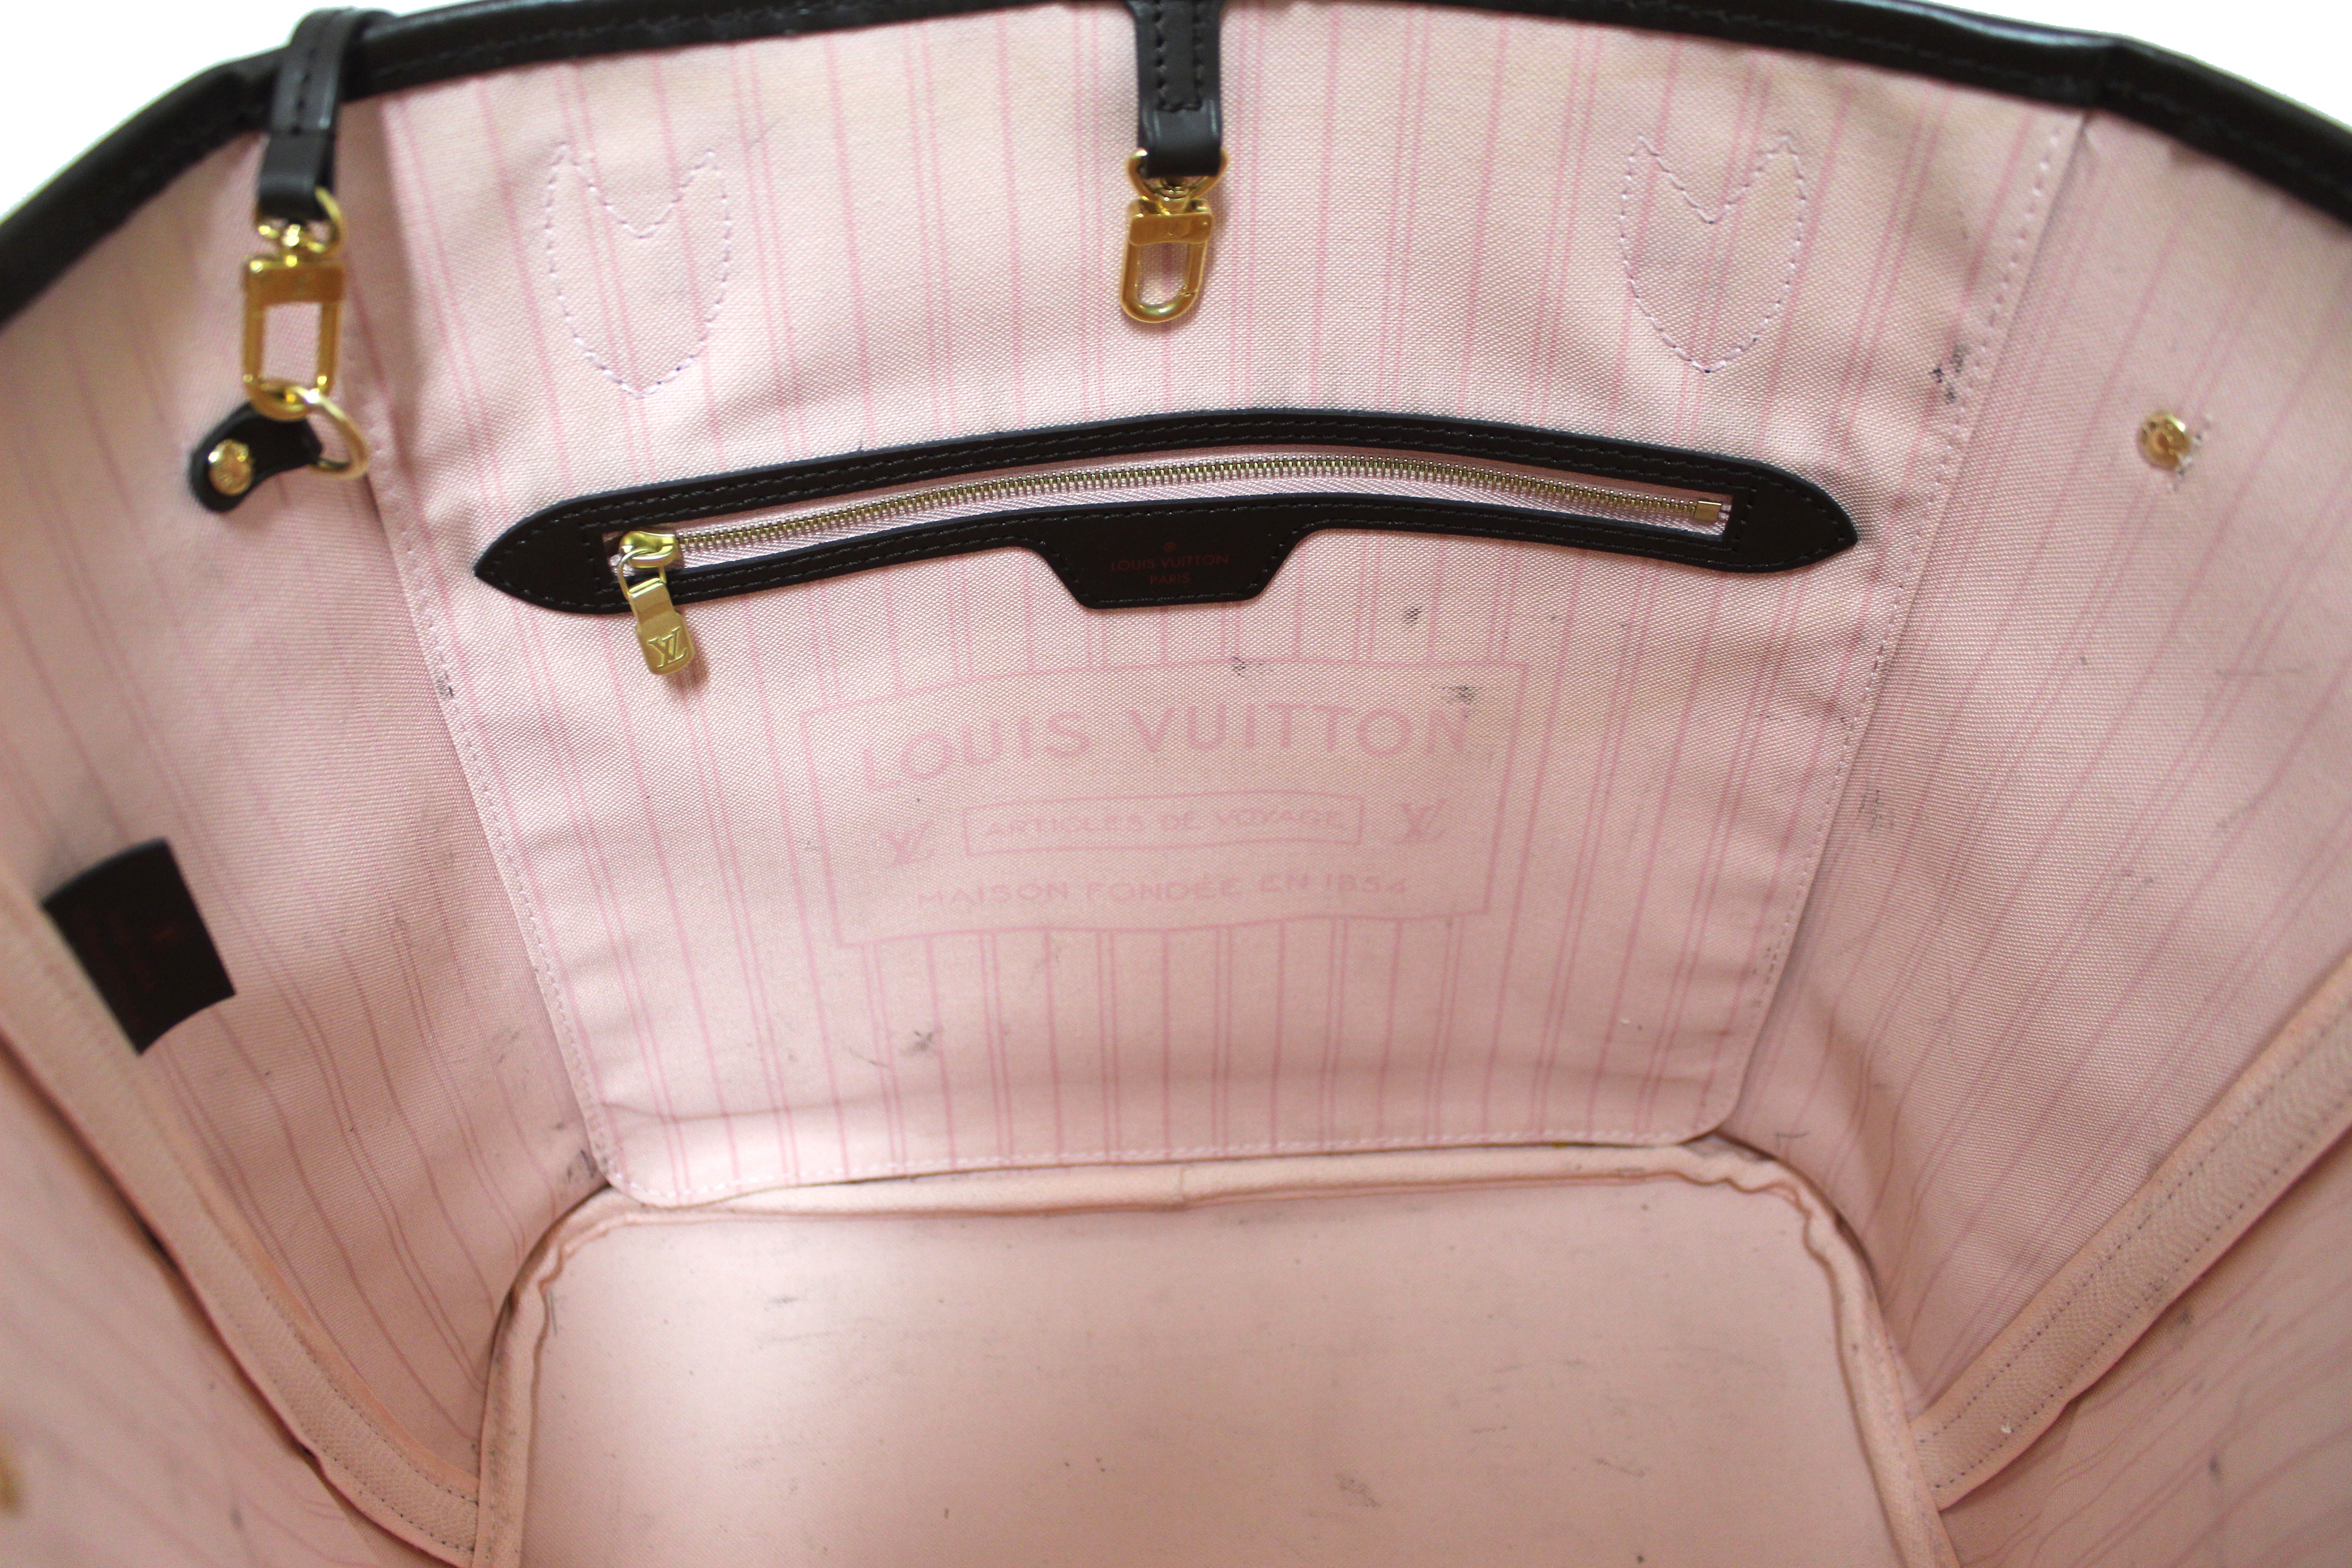 Authentic Louis Vuitton Damier Ebene Canvas Neverfull mm Tote Shoulder Bag